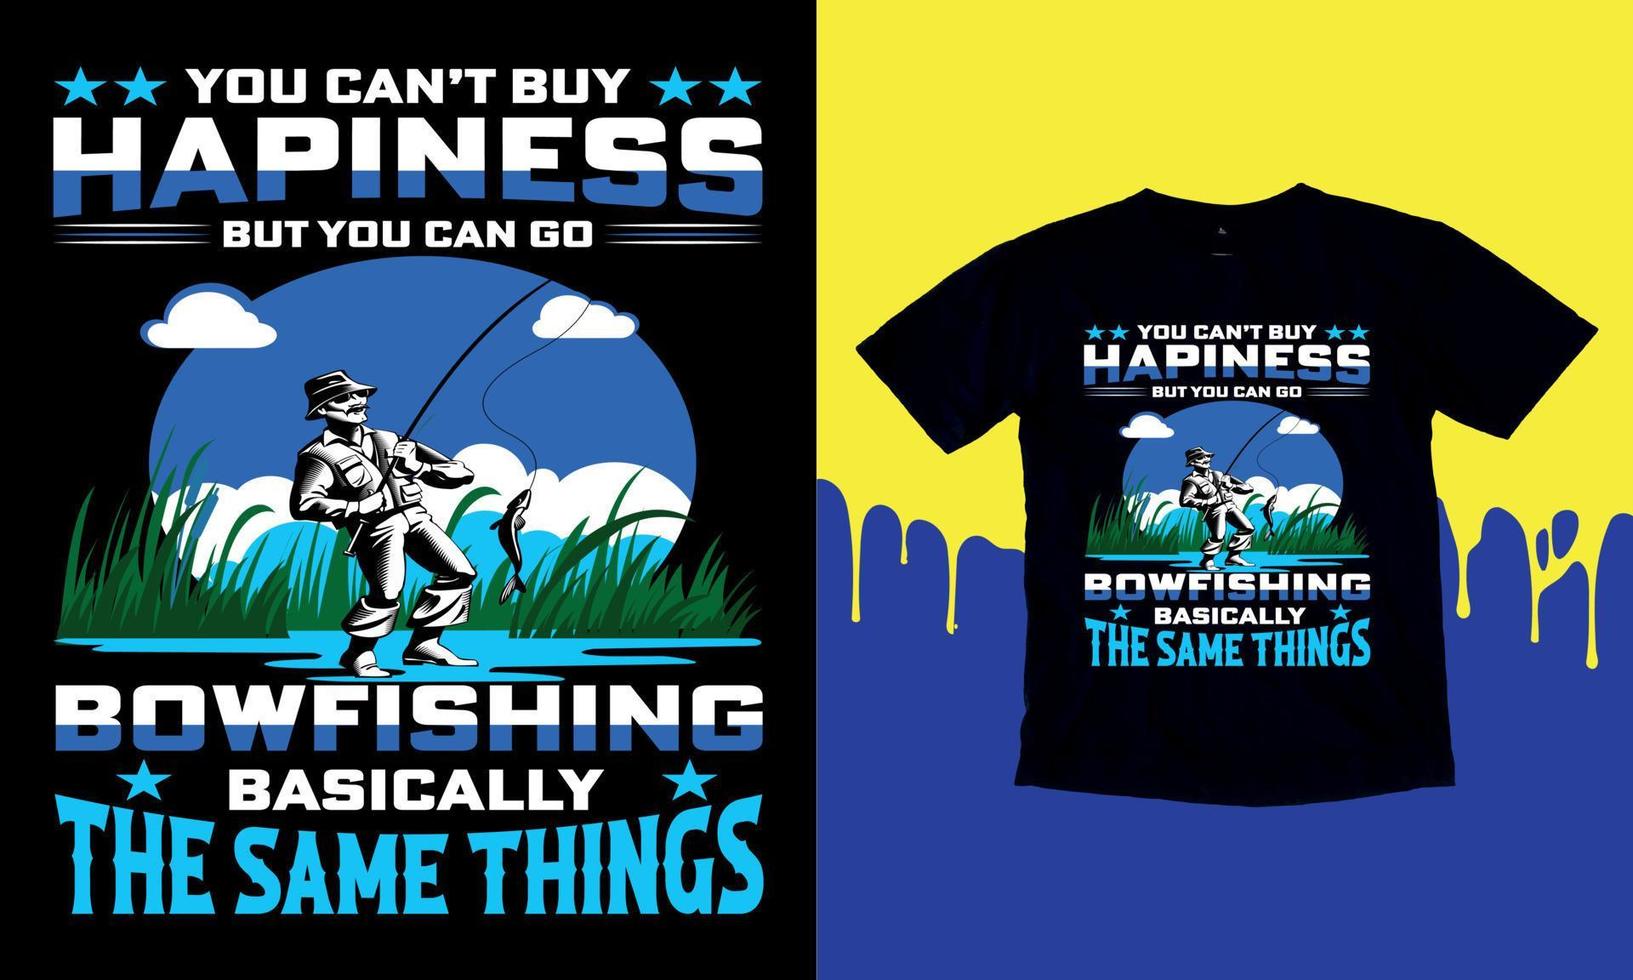 Sie können Glück nicht kaufen, aber Sie können im Grunde die gleichen Dinge bogenfischen gehen, T-Shirt-Geschenk-Männer lustige Angel-T-Shirt-Design, Vektorgrafik, typografisches Poster oder T-Shirt. vektor